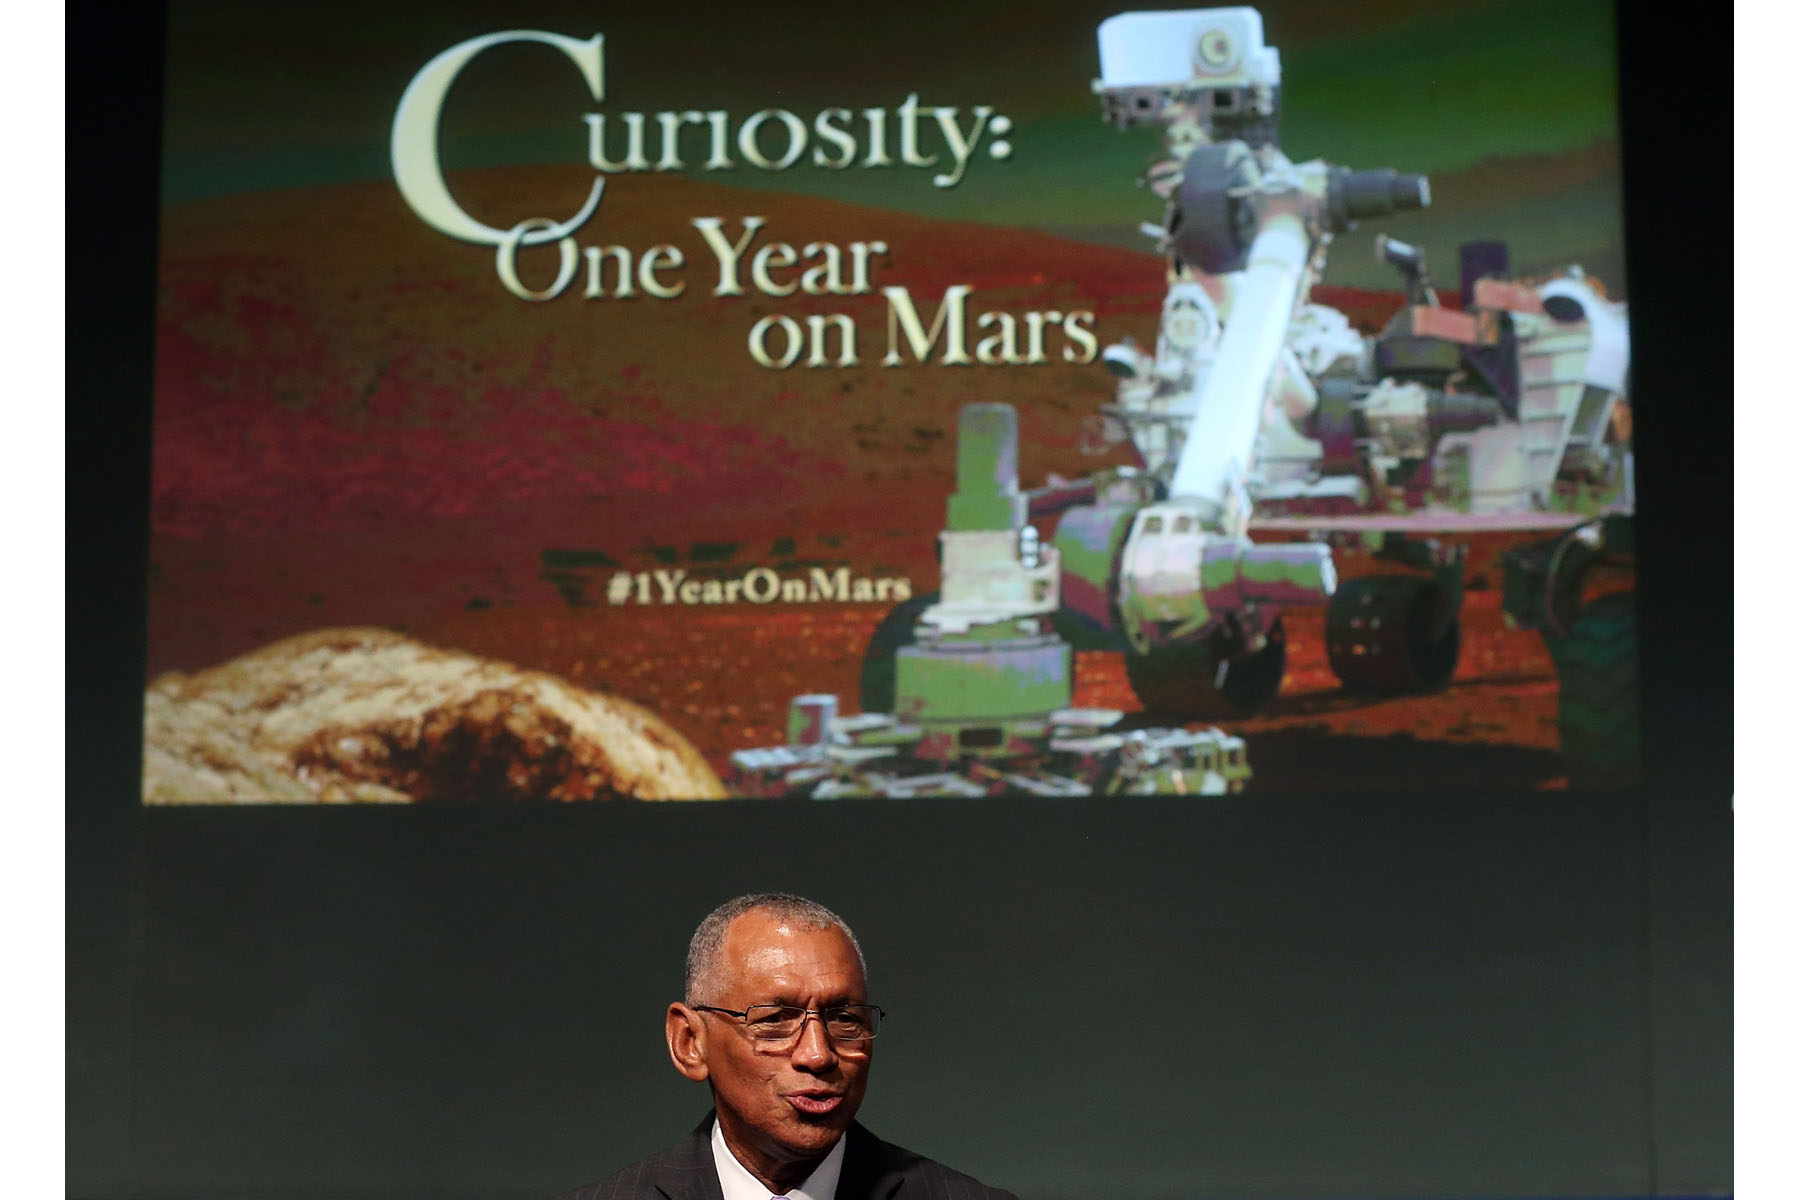 Estados Unidos. La nave-robot ‘Curiosity’ cumplió ayer su primer año en Marte, de donde ha enviado u